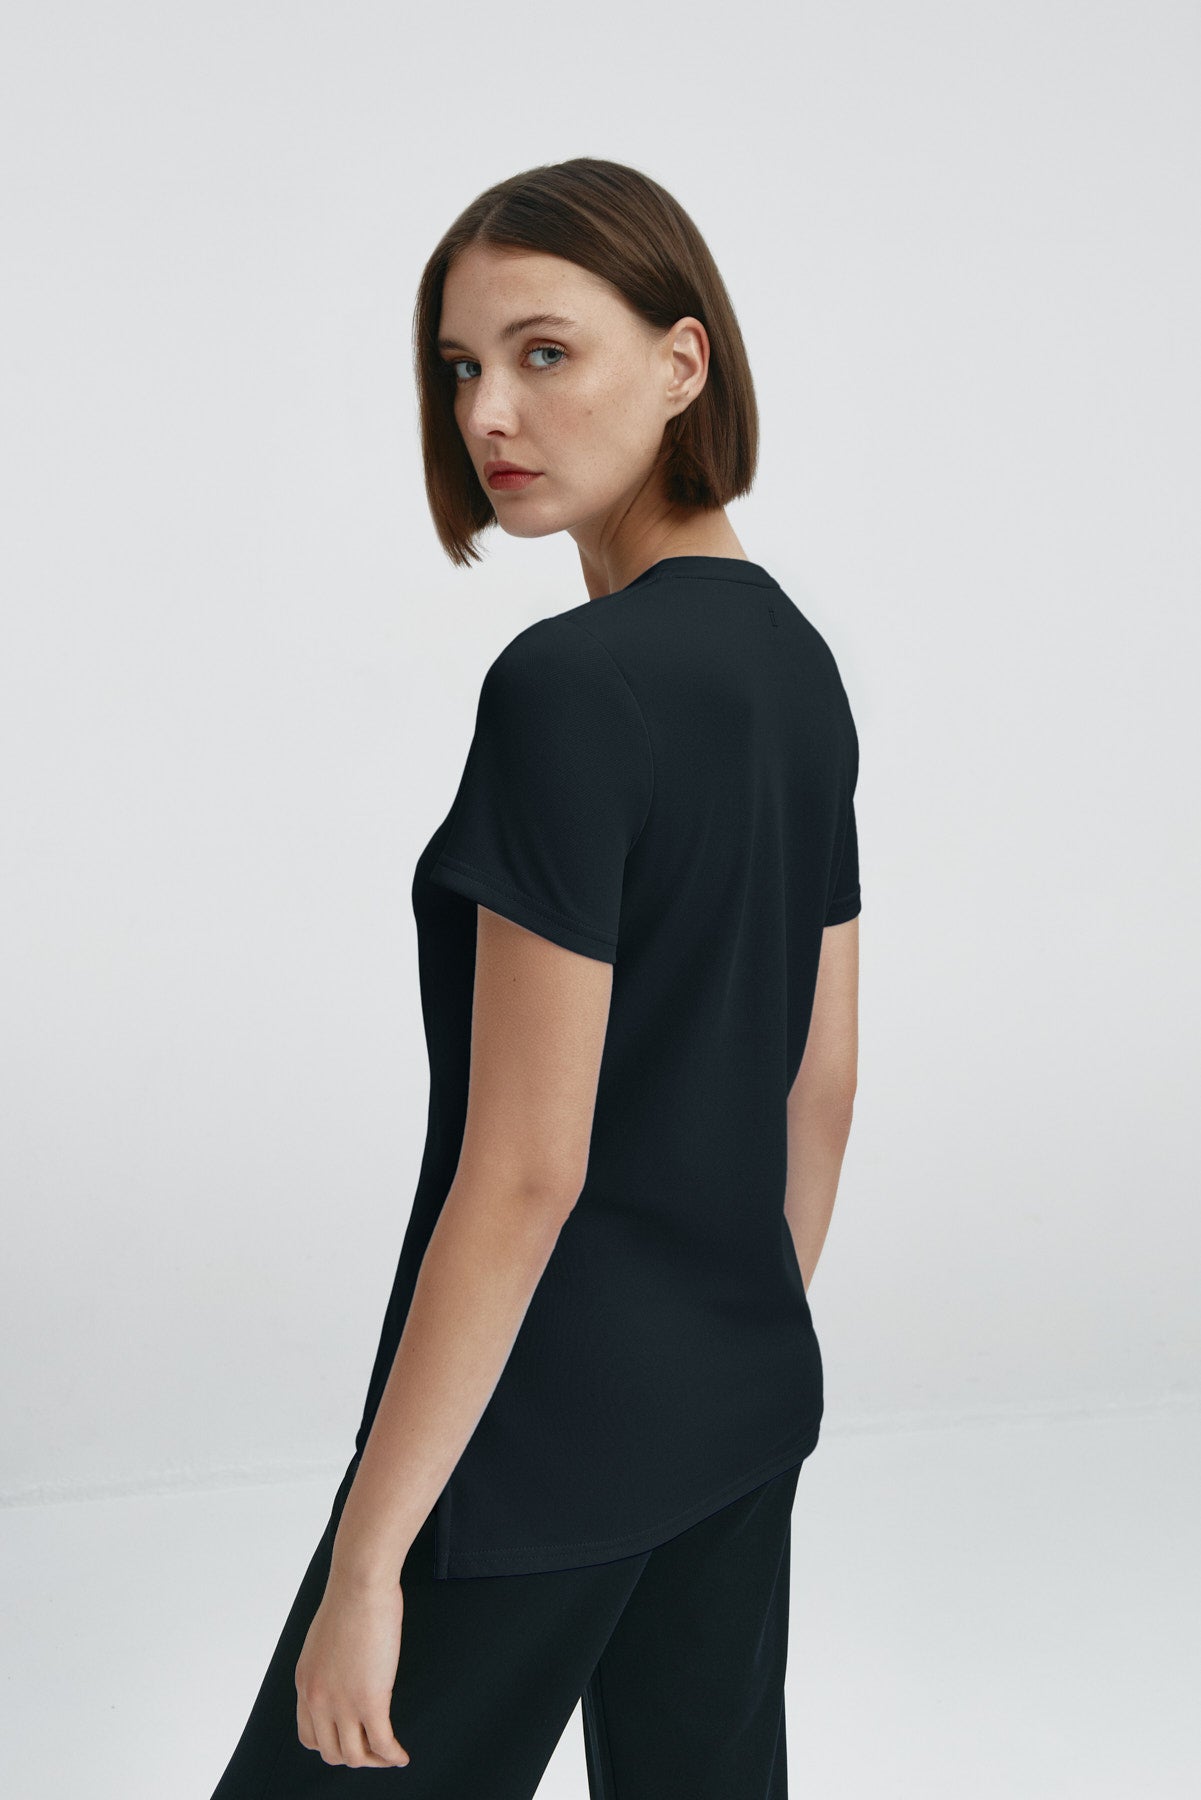 Camiseta para mujer de manga corta con escote pico color negro, básico. Foto espalda